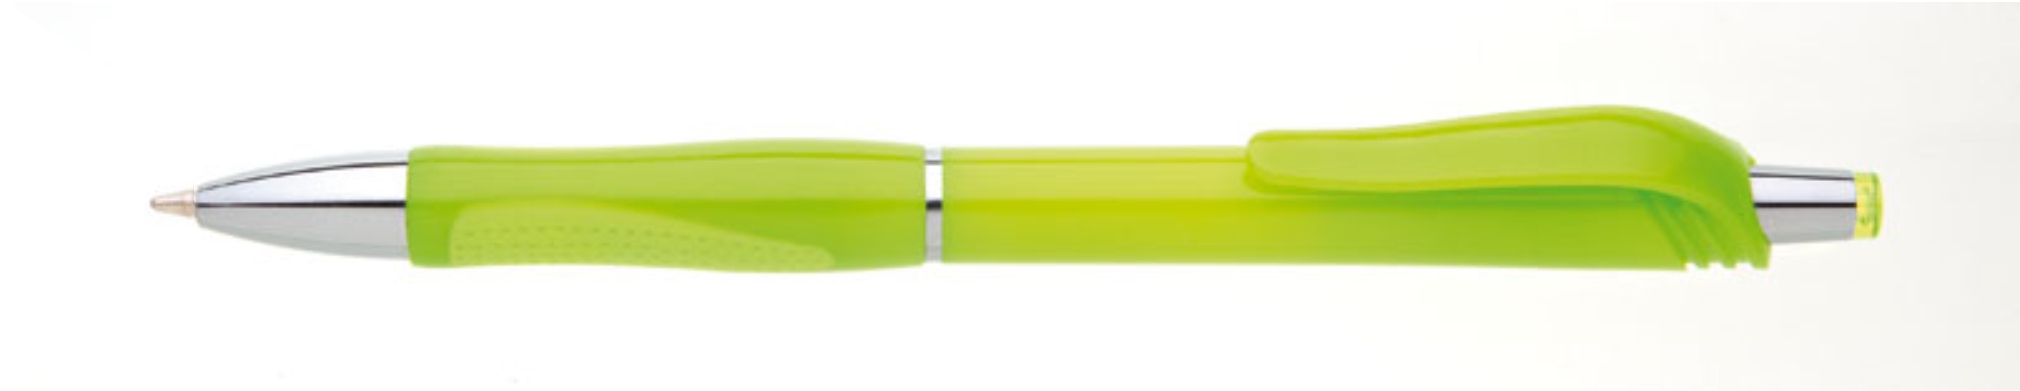 Propiska plast SALA hrot 1mm, zelená světlá